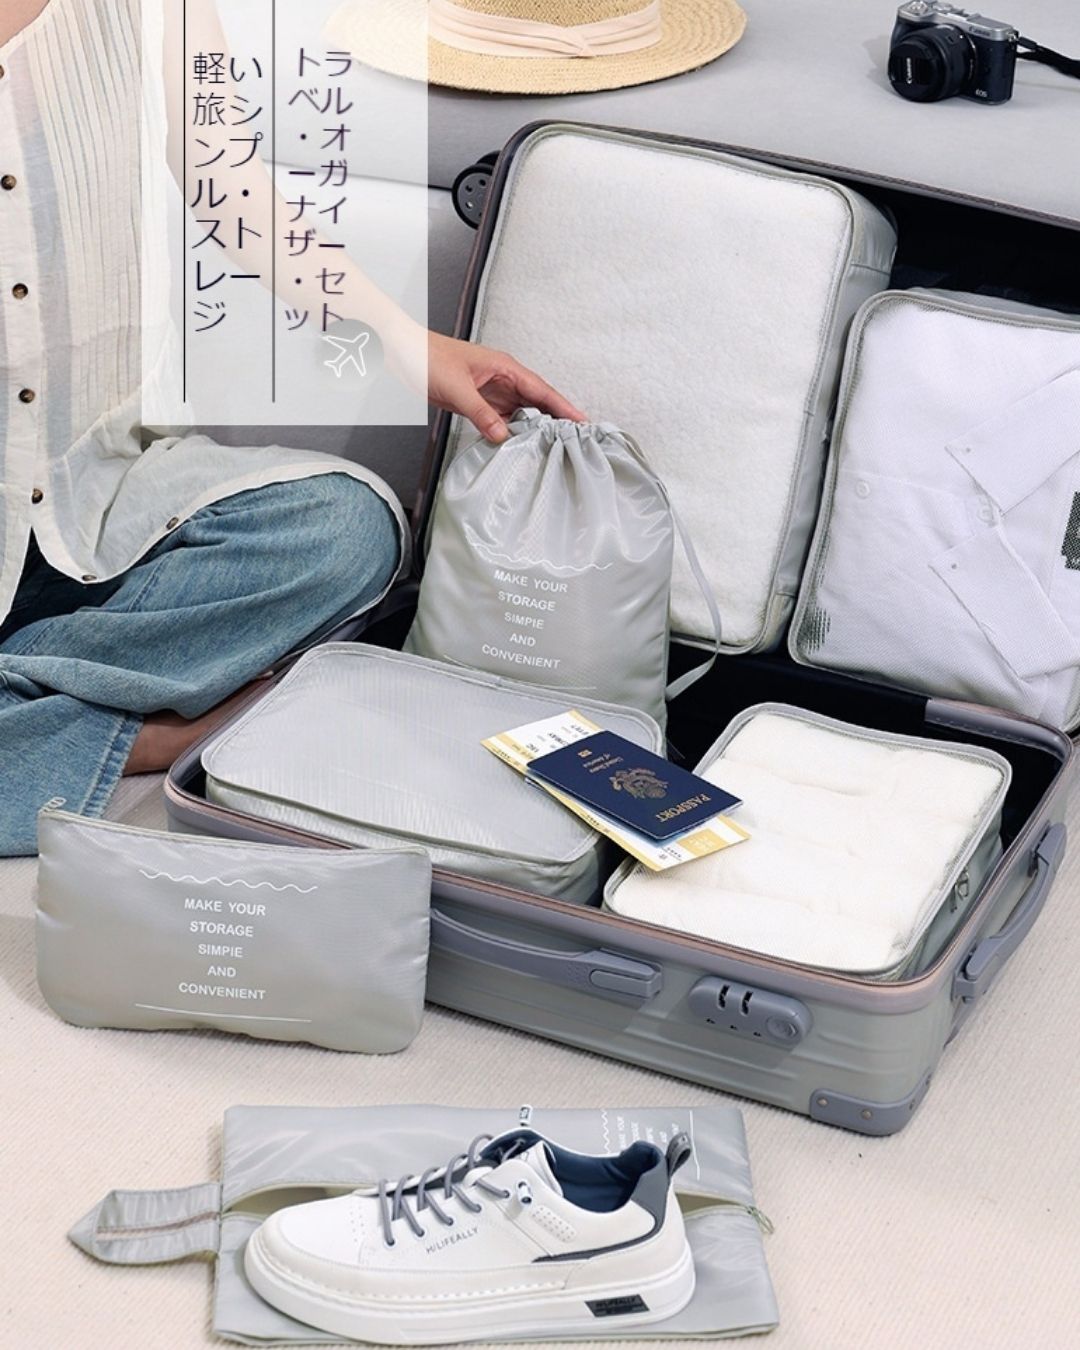 Seven-piece travel storage bag